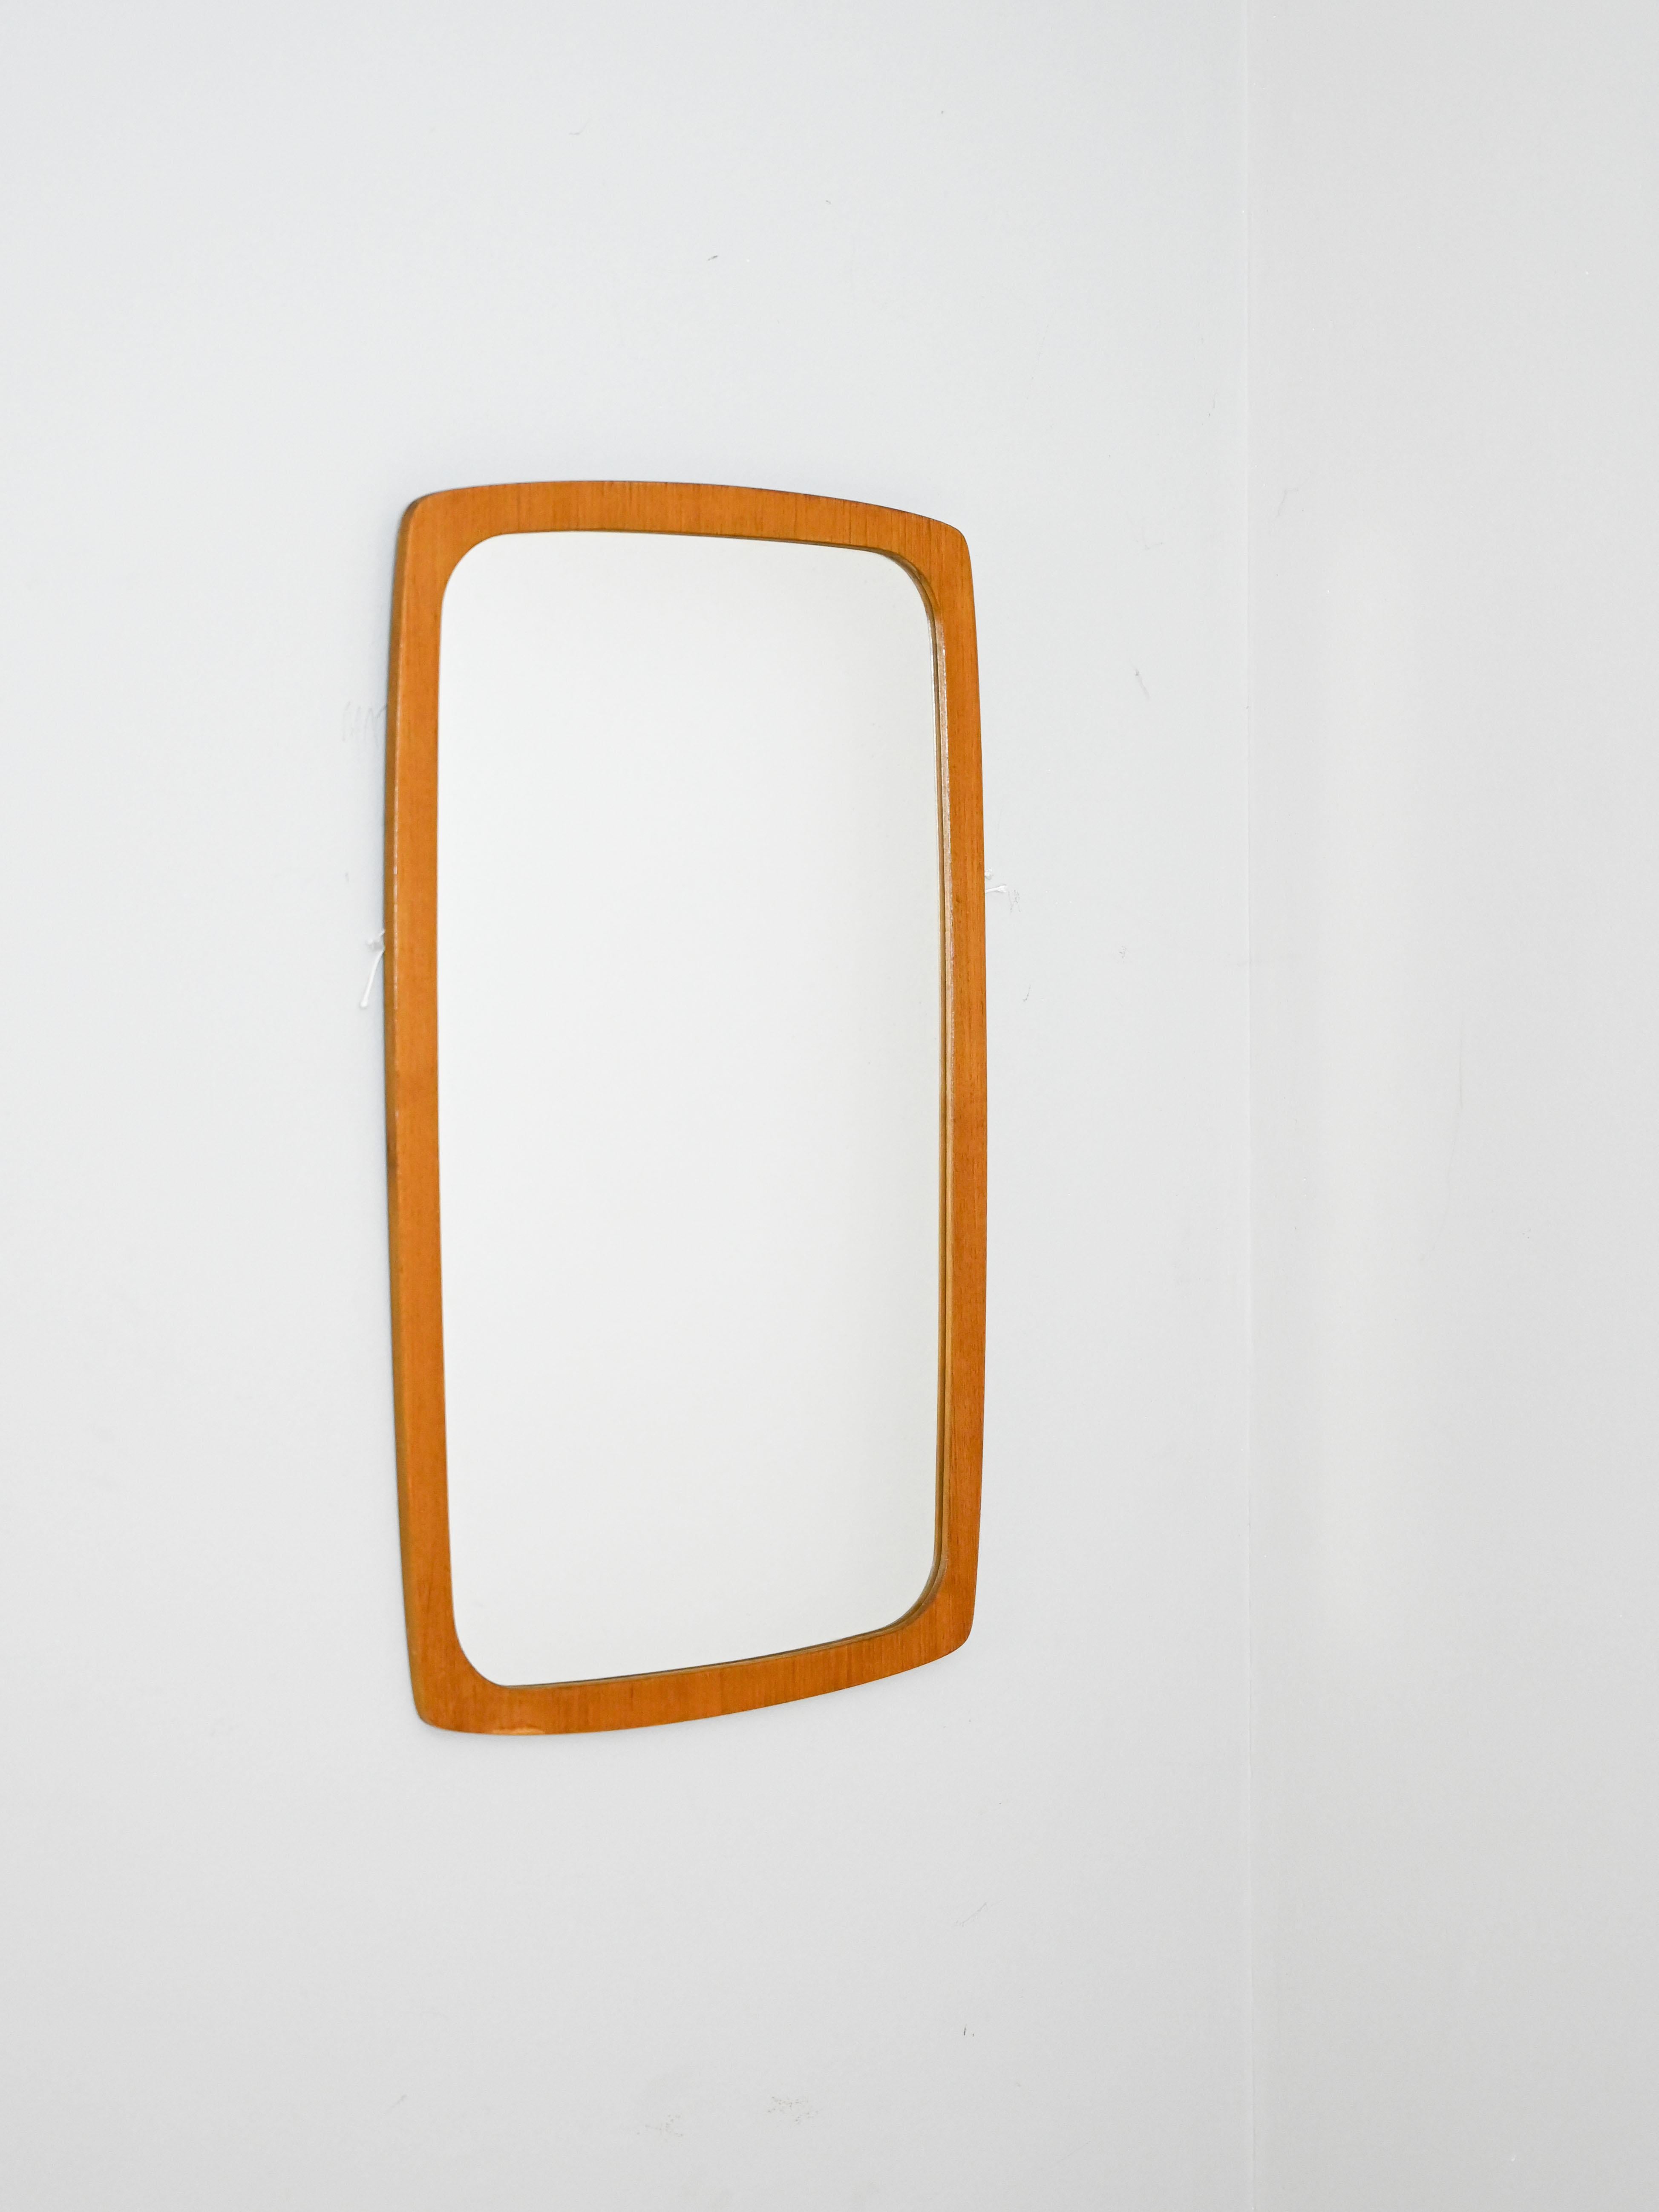 Schwedischer Vintage-Spiegel.

Dieser Spiegel mit einer einfachen und modernen Form zeichnet sich durch den Rahmen mit abgerundeten Ecken aus. 
Ein vielseitiges Möbelstück, das sich für verschiedene Umgebungen eignet und dem Raum einen Retro-Look